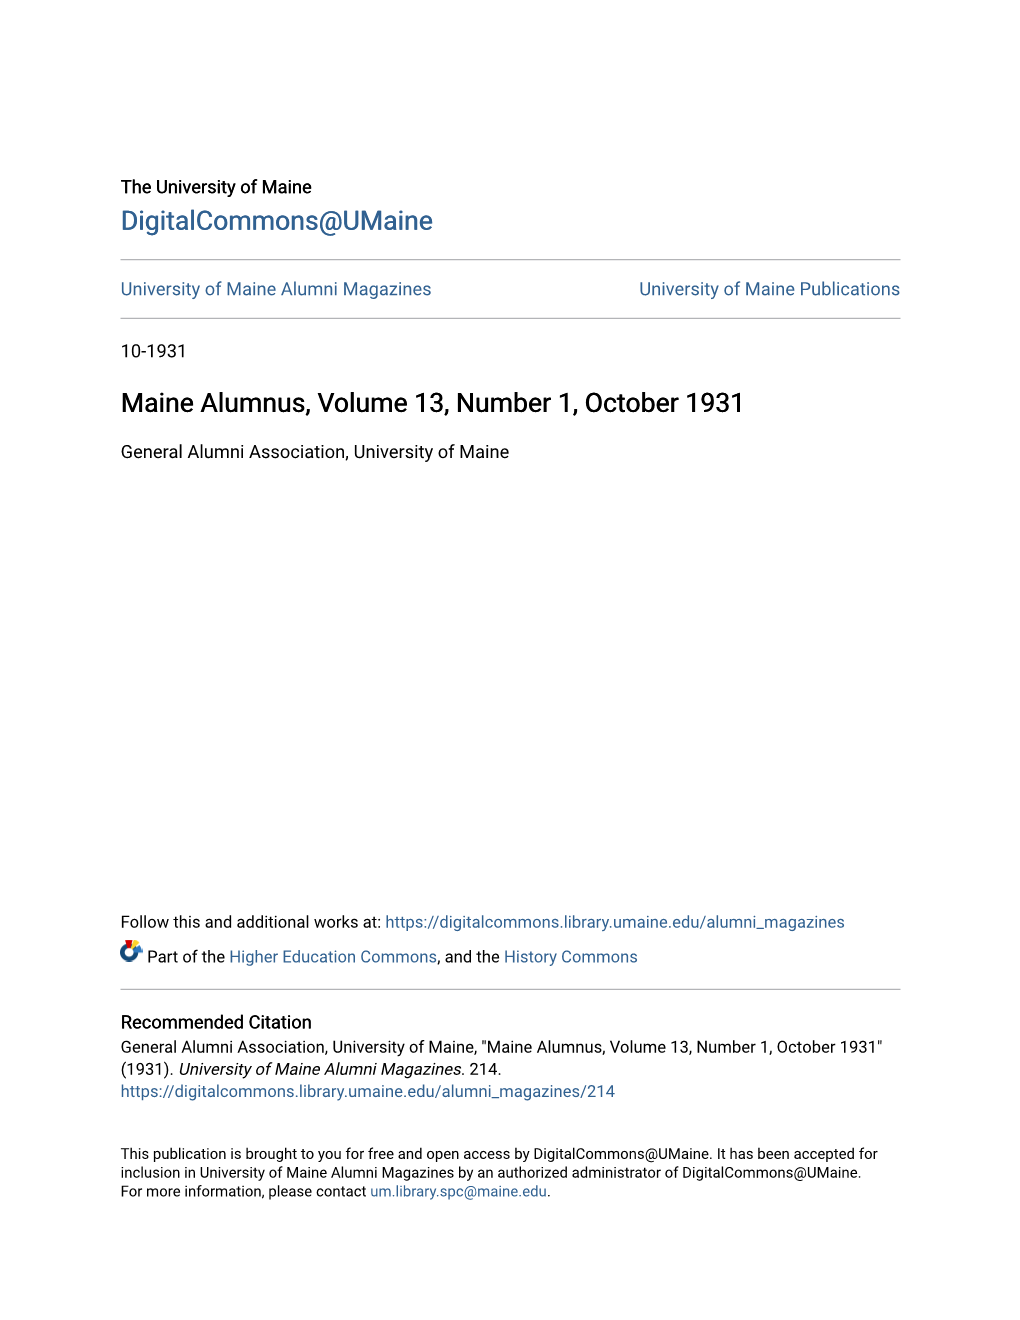 Maine Alumnus, Volume 13, Number 1, October 1931